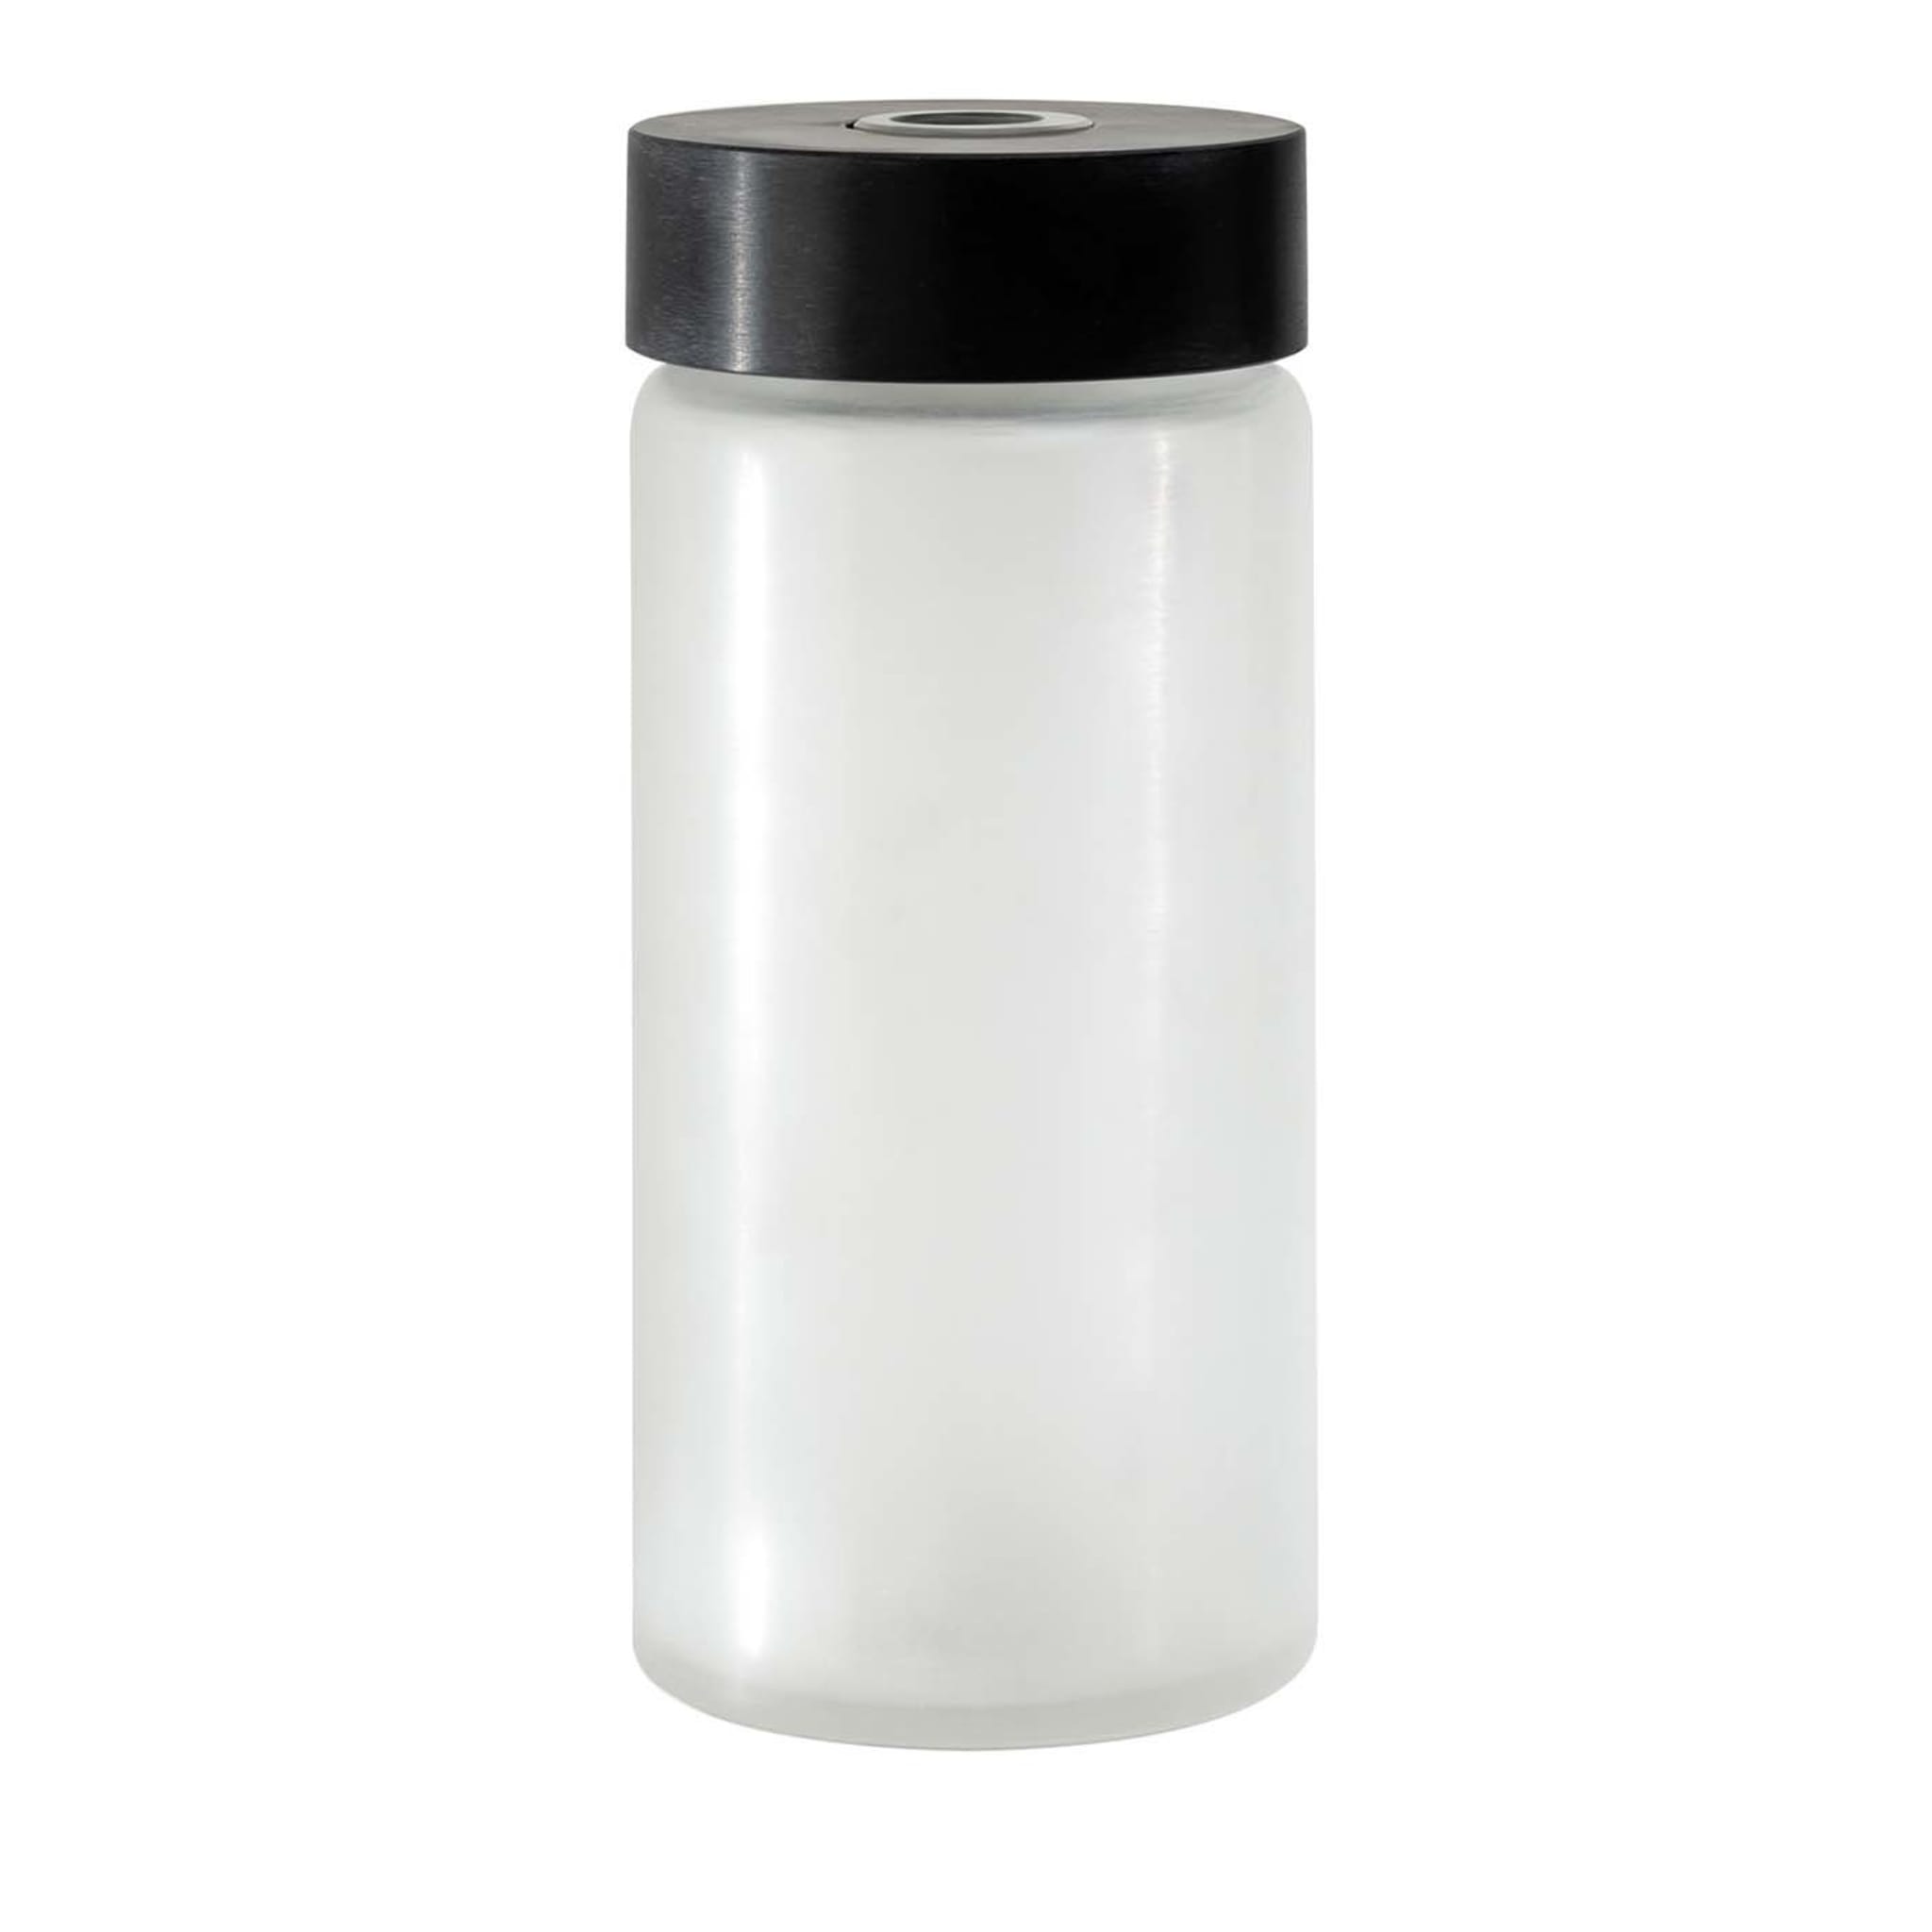 Le grand vase cylindrique en verre blanc et noir - Vue principale